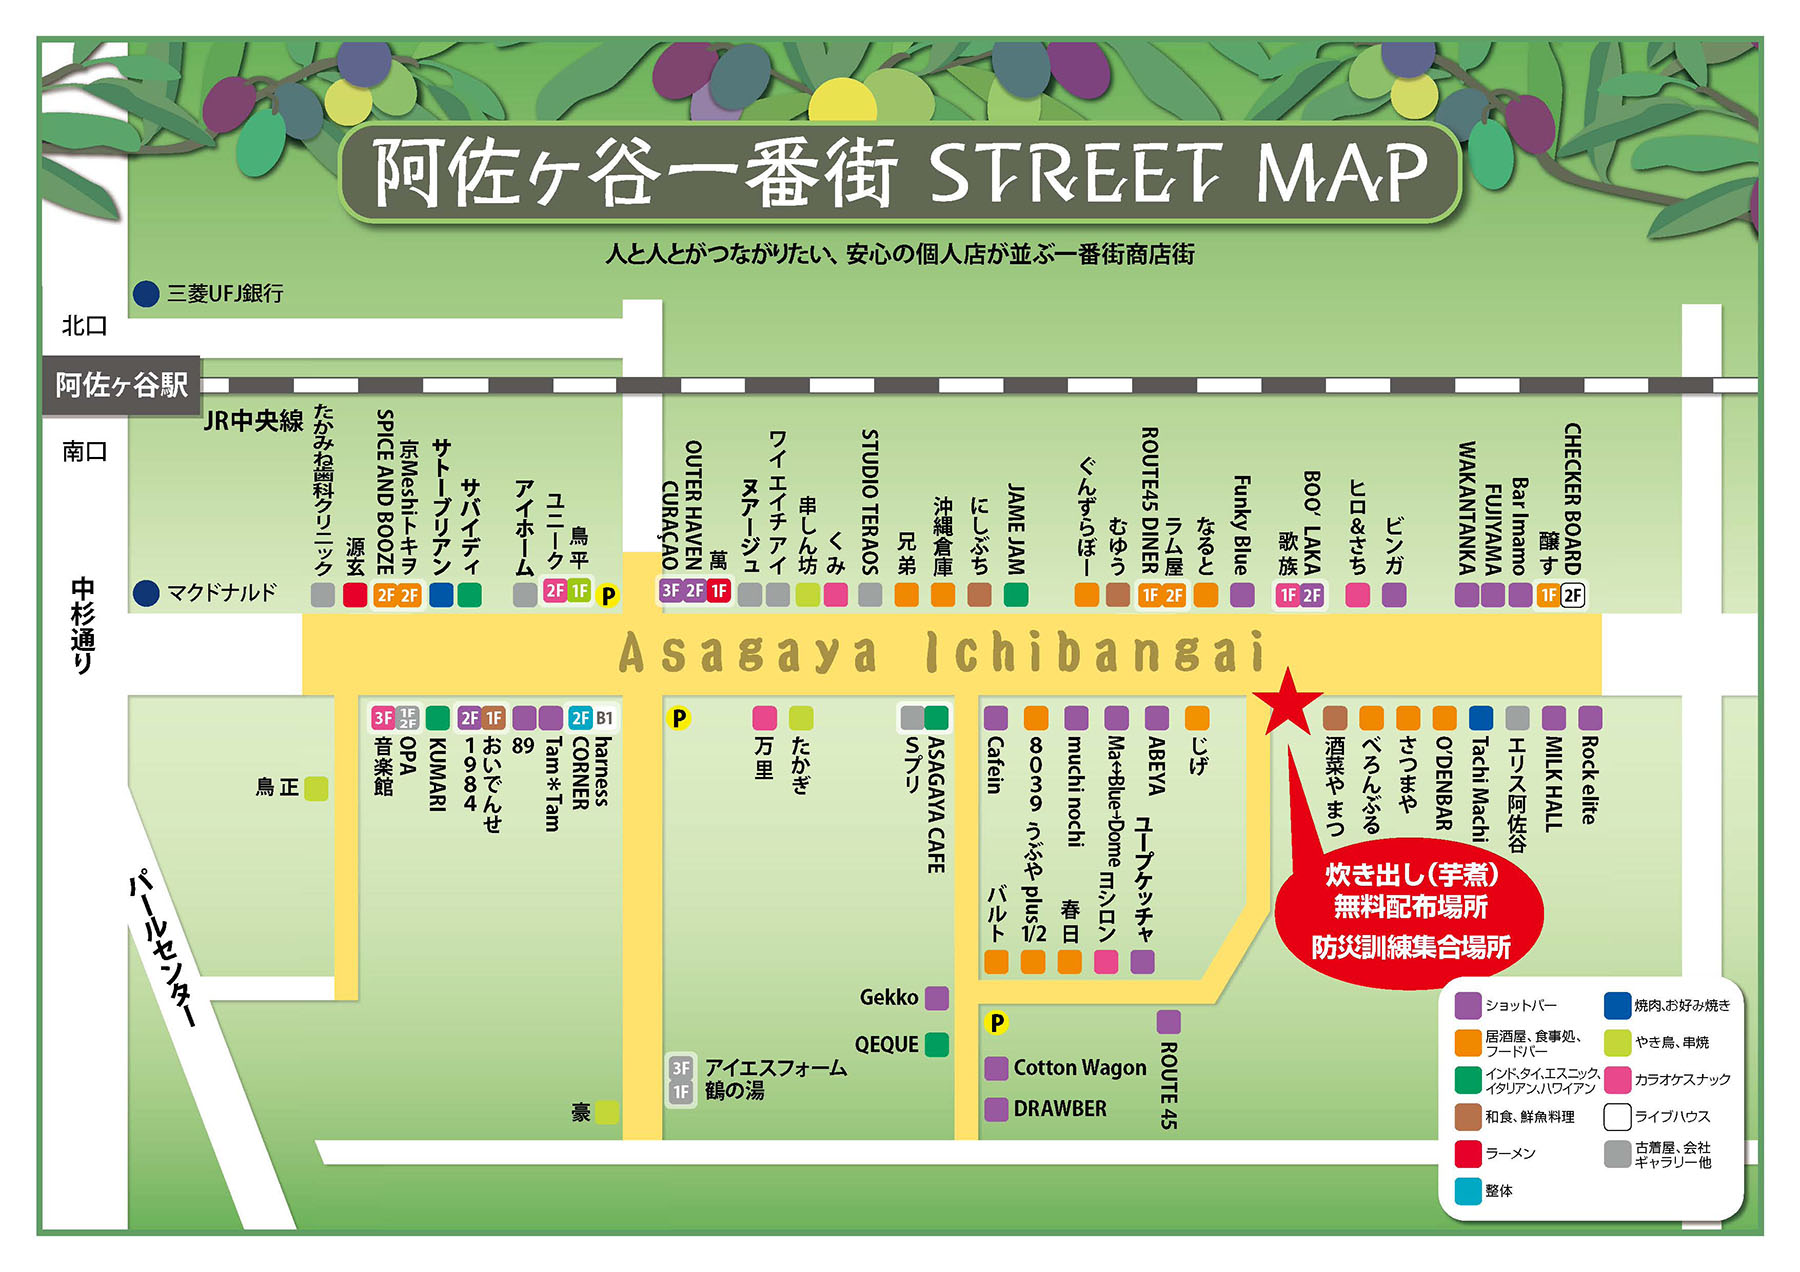 阿佐ヶ谷一番街 STREET MAP